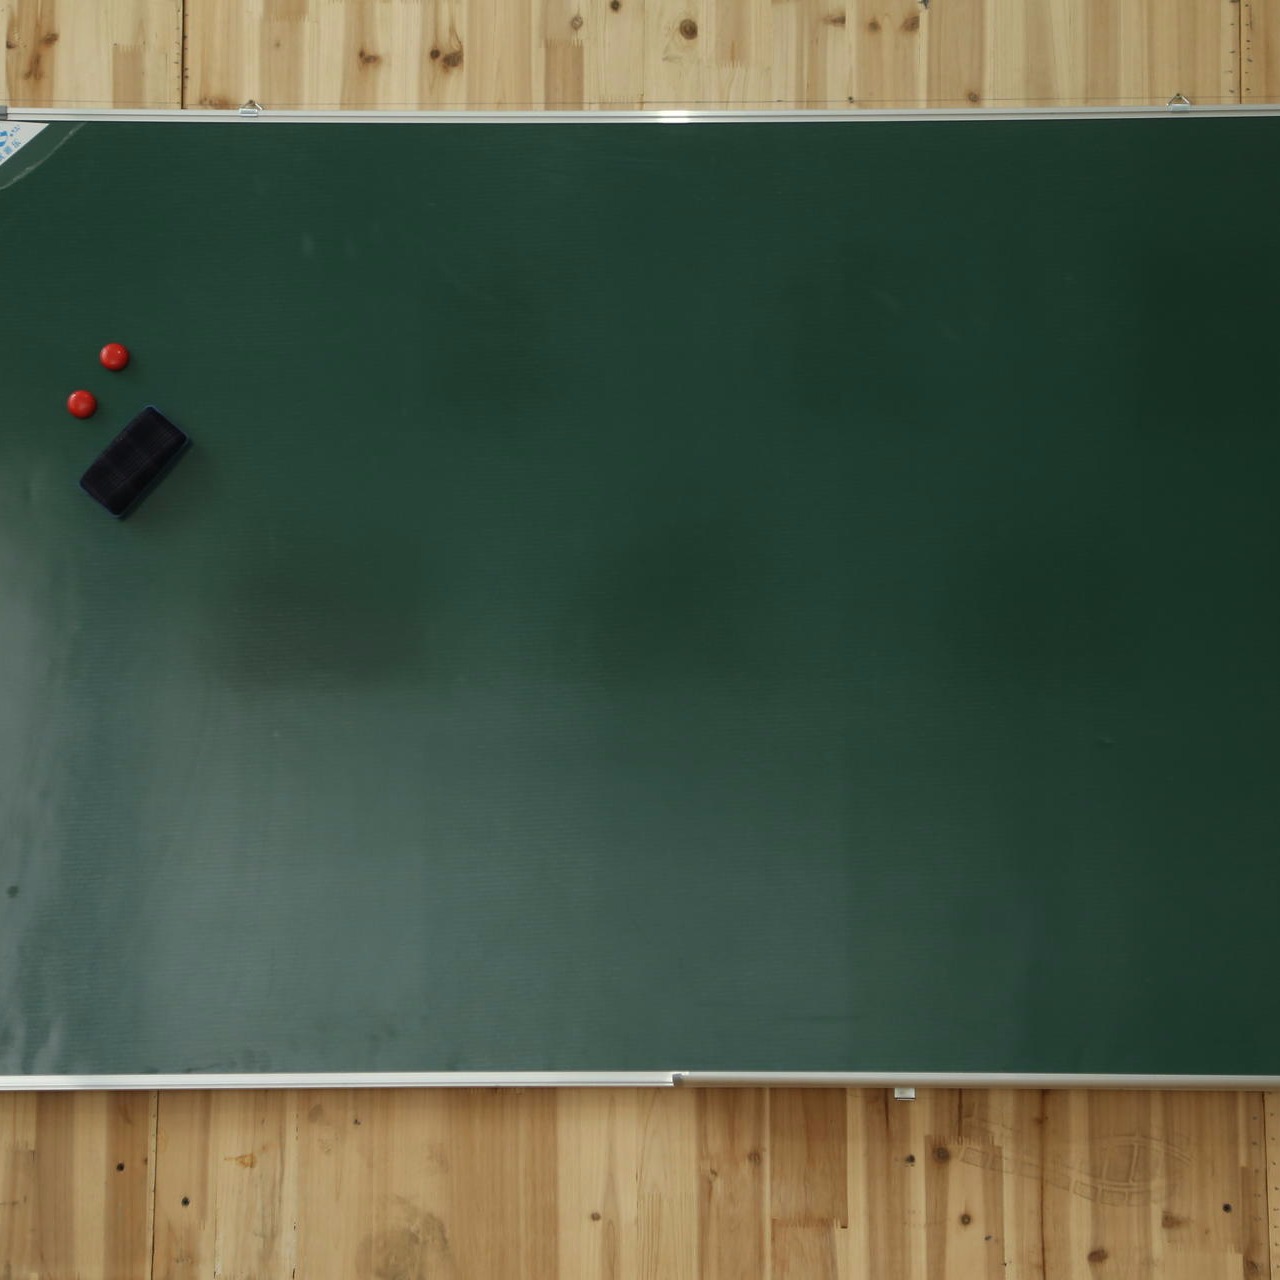 优雅乐教学绿板厂家直销 磁性会议写字板儿童绘画涂鸦小黑板支持定制图片